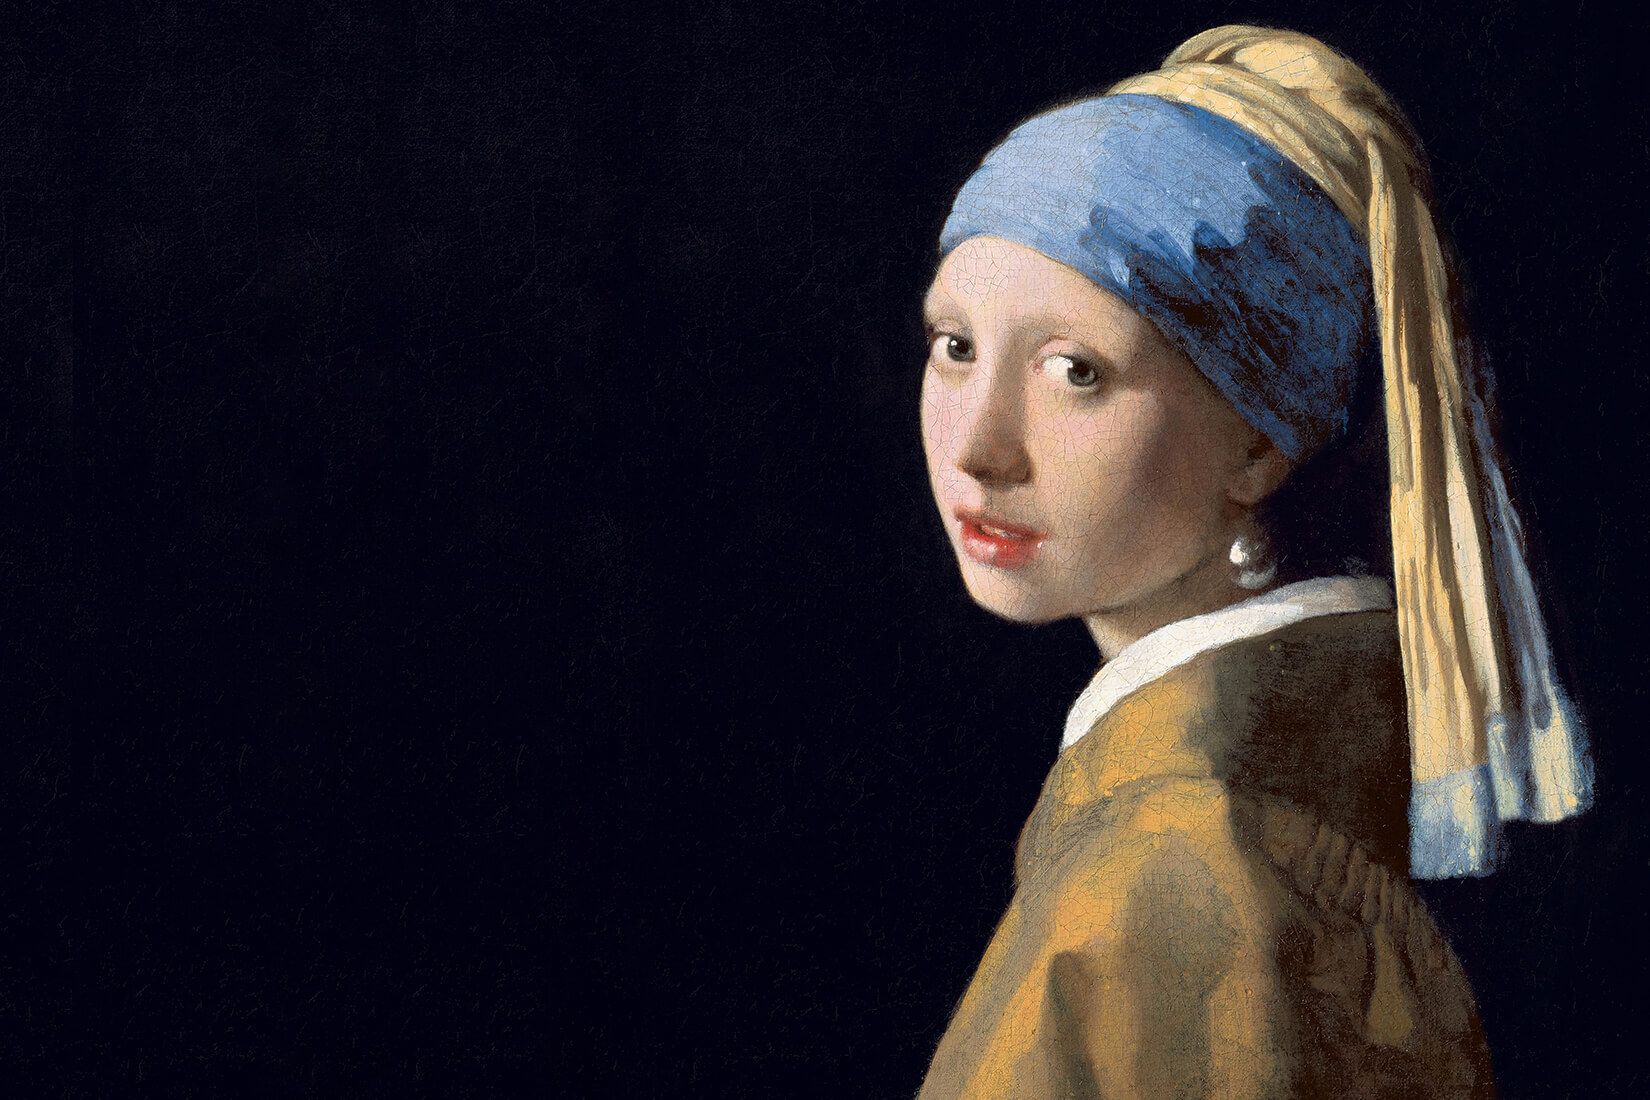 Girl With A Pearl Earring Wallpaper. Vermeer Wallpaper. MuralsWallpaper. Johannes vermeer, Most famous paintings, Mural